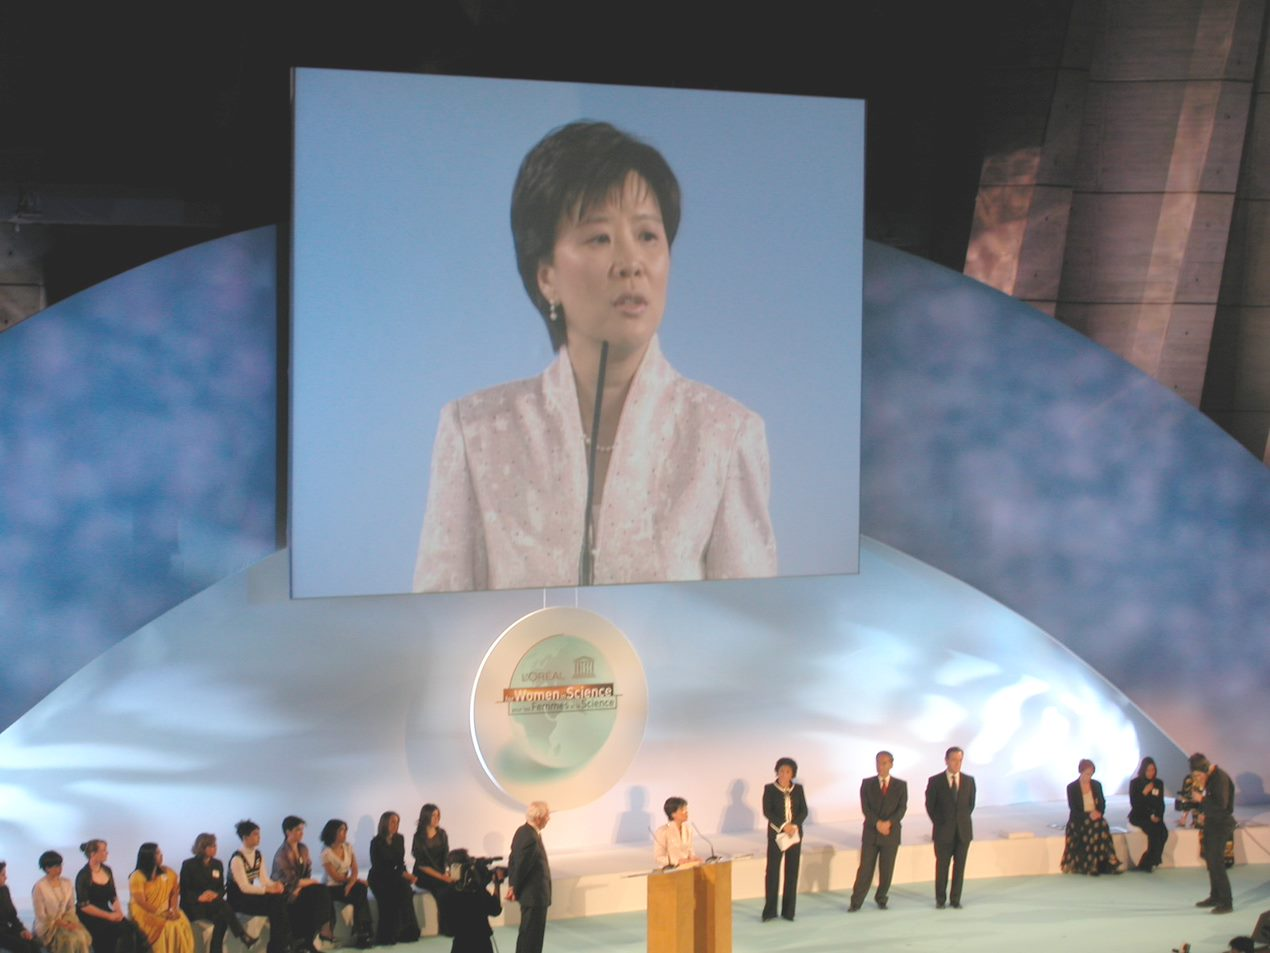 葉教授(圖中屏幕顯示)是首位獲得歐萊雅聯合國教科文組織頒發世界傑出女科學家成就獎的中國女生物科學家。